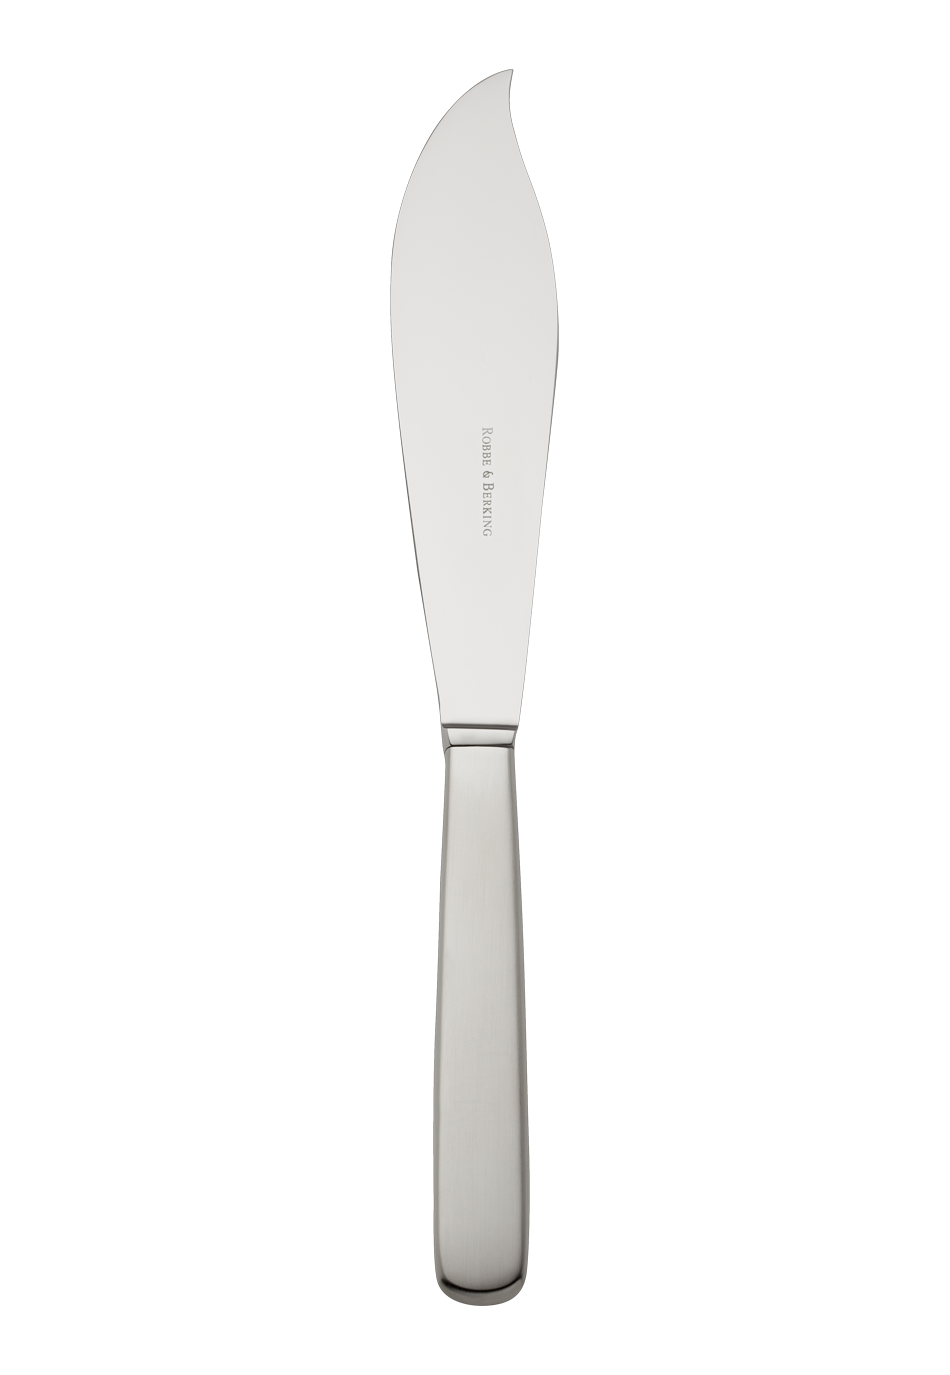 Atlantic Tart Knife (18/8 stainless steel)